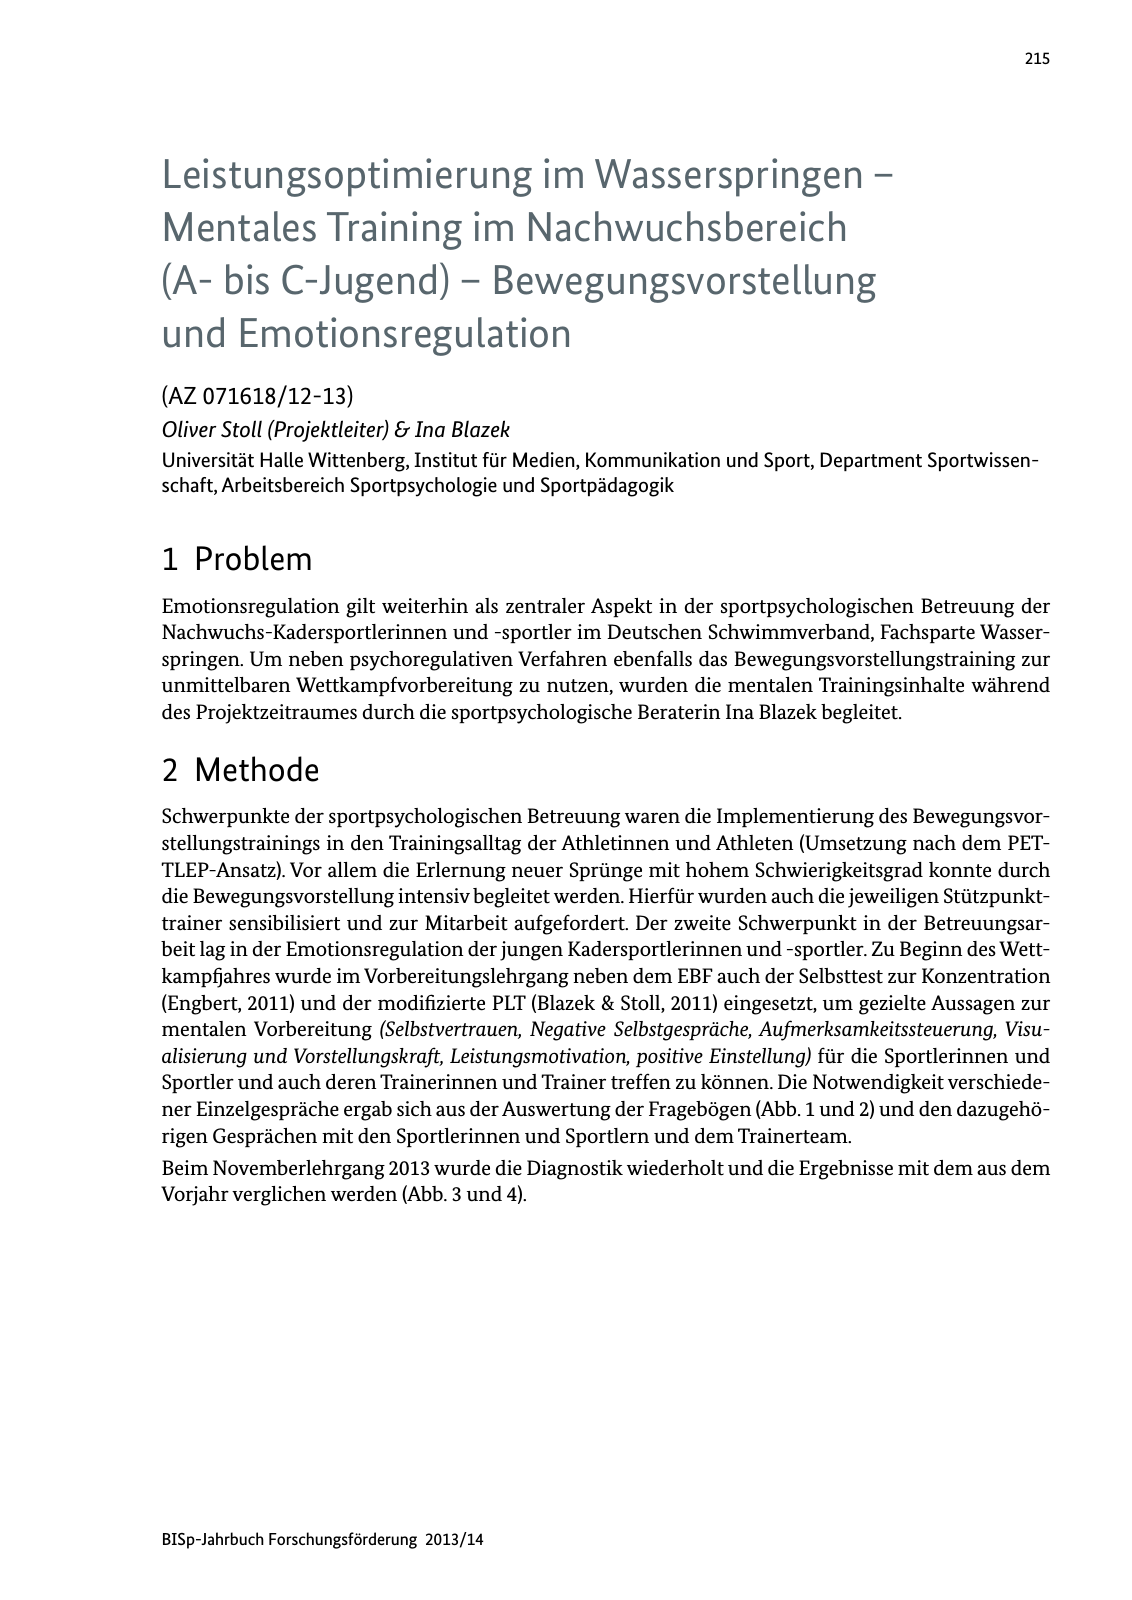 Vorschau BISp-Jahrbuch Forschungsförderung 2013/14 Seite 216